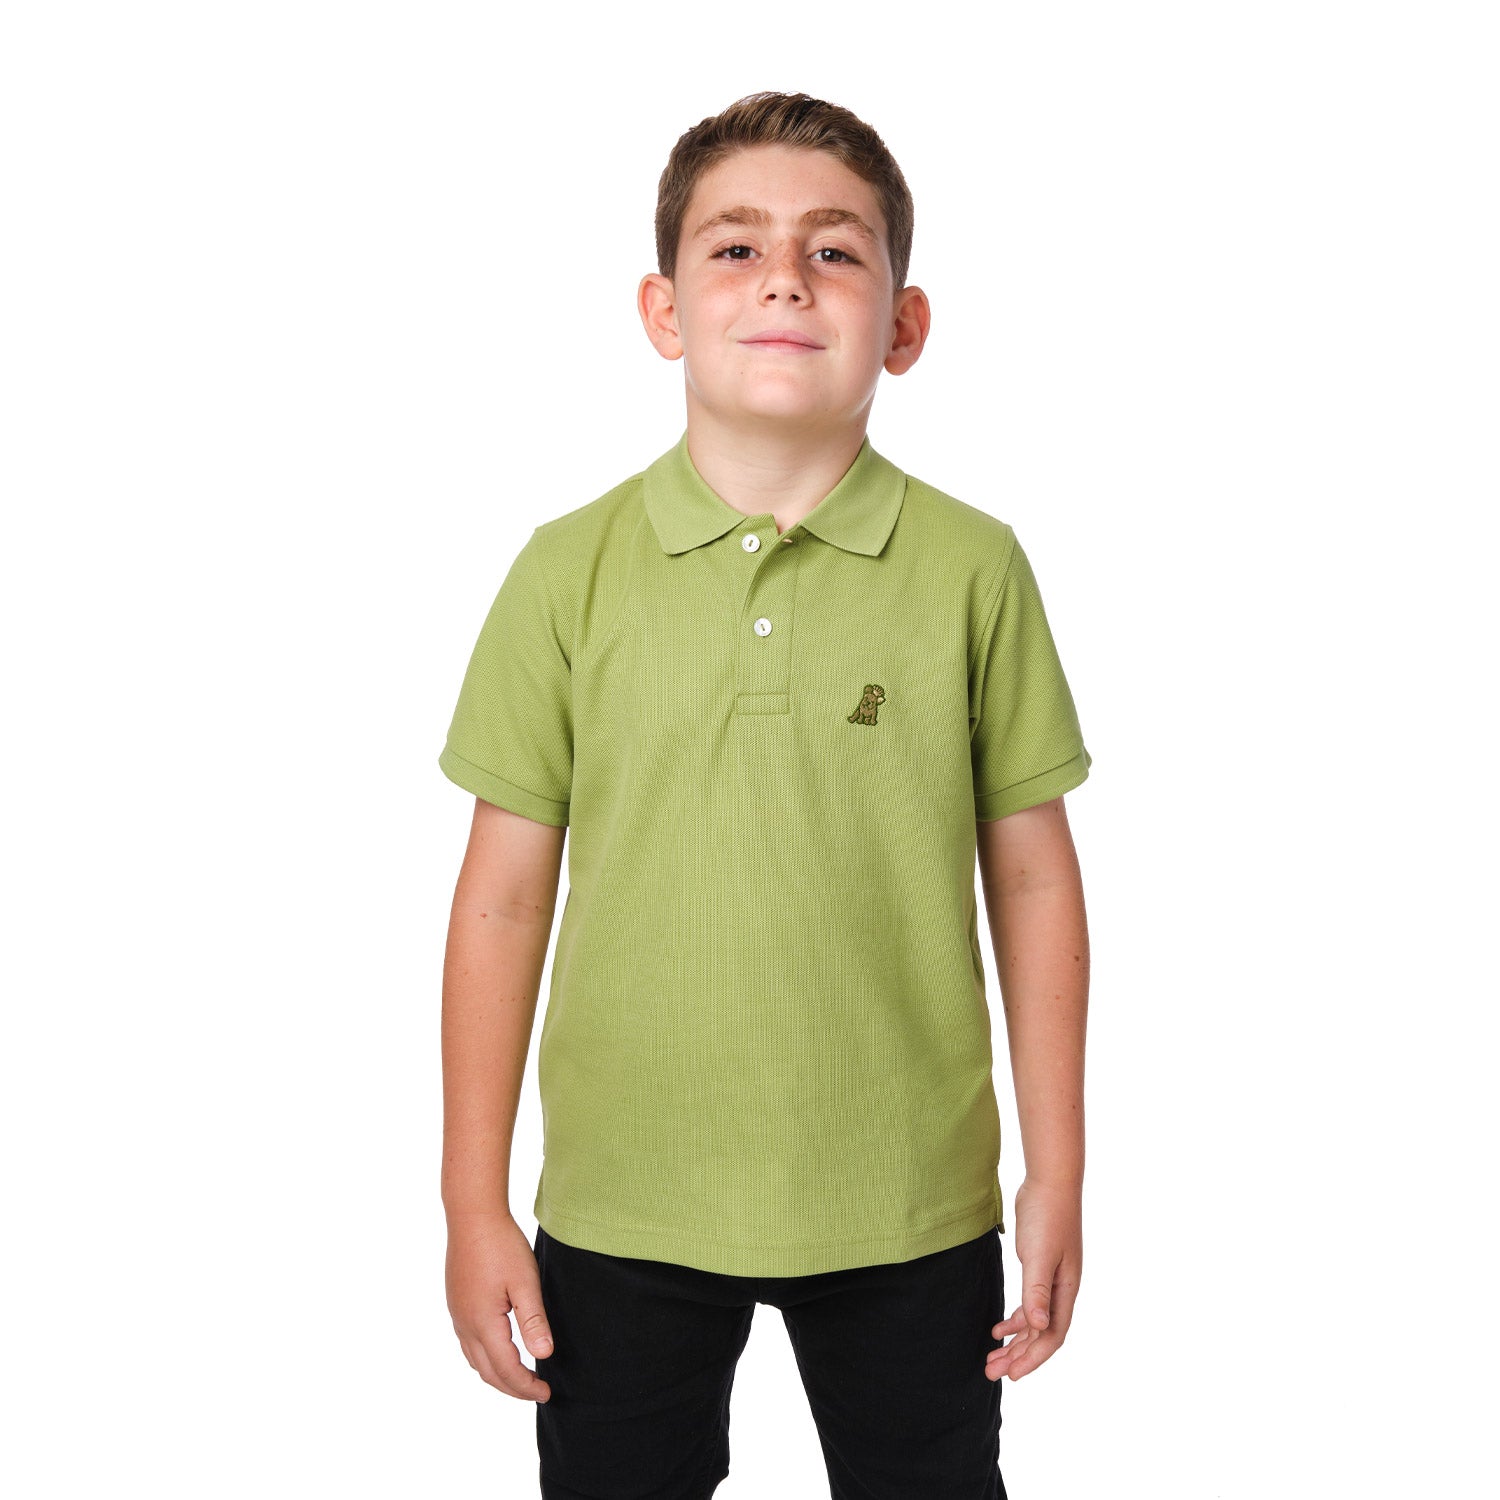 Kid's Polo Shirt - JAMES BARK